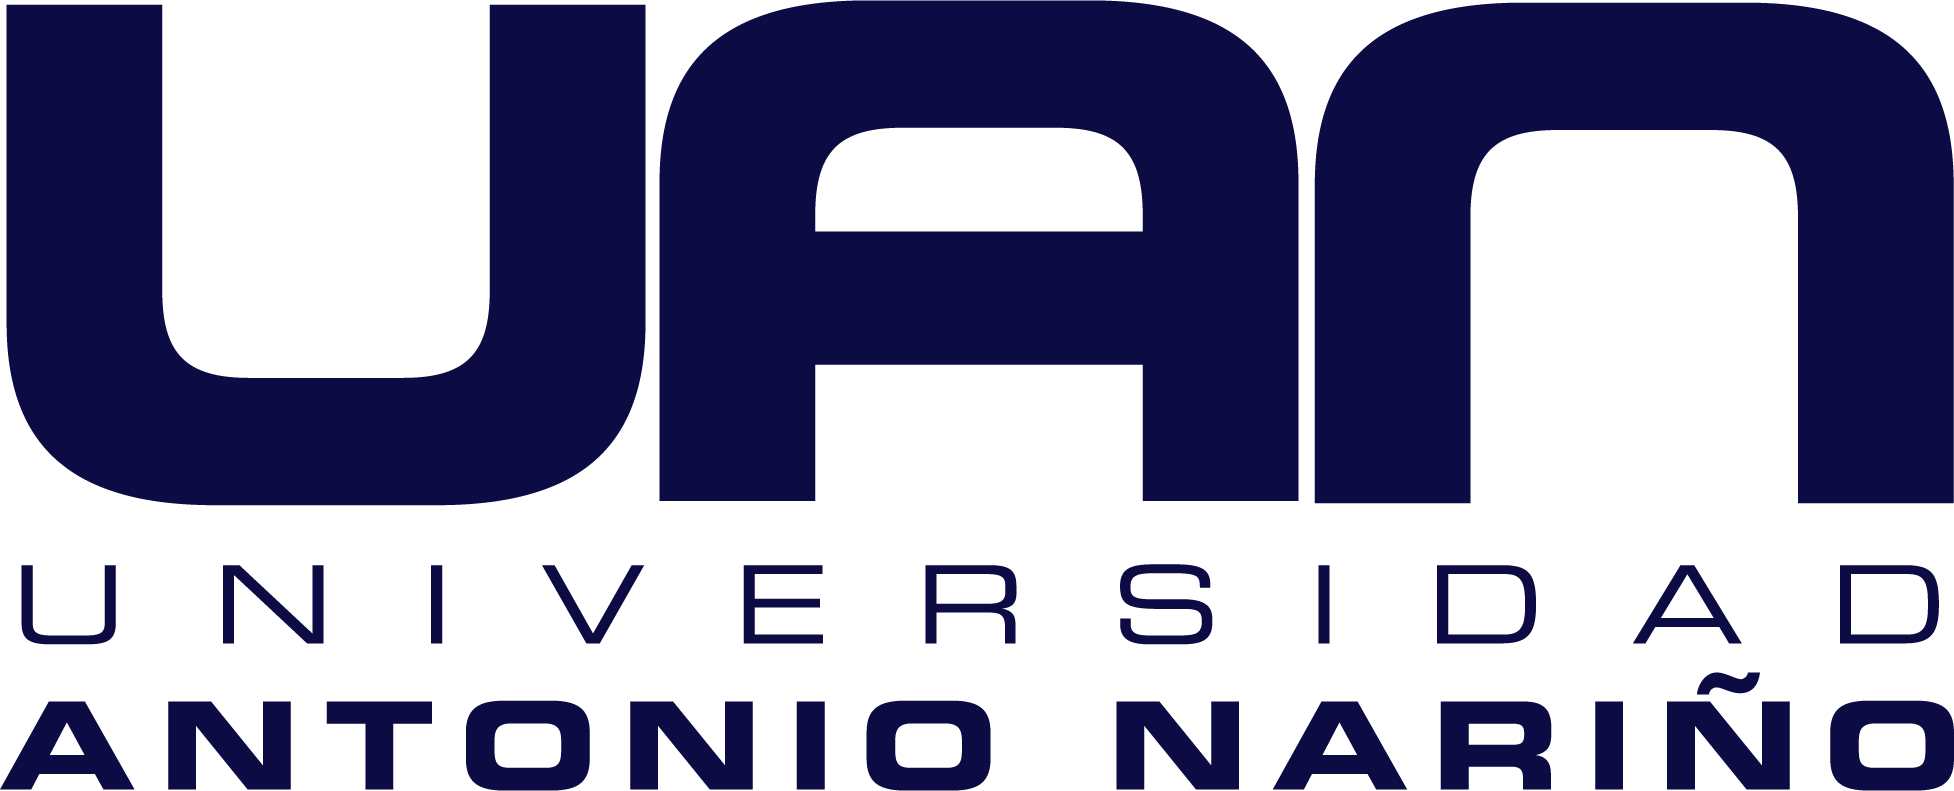 Logosímbolo de la Universidad Antonio Nariño